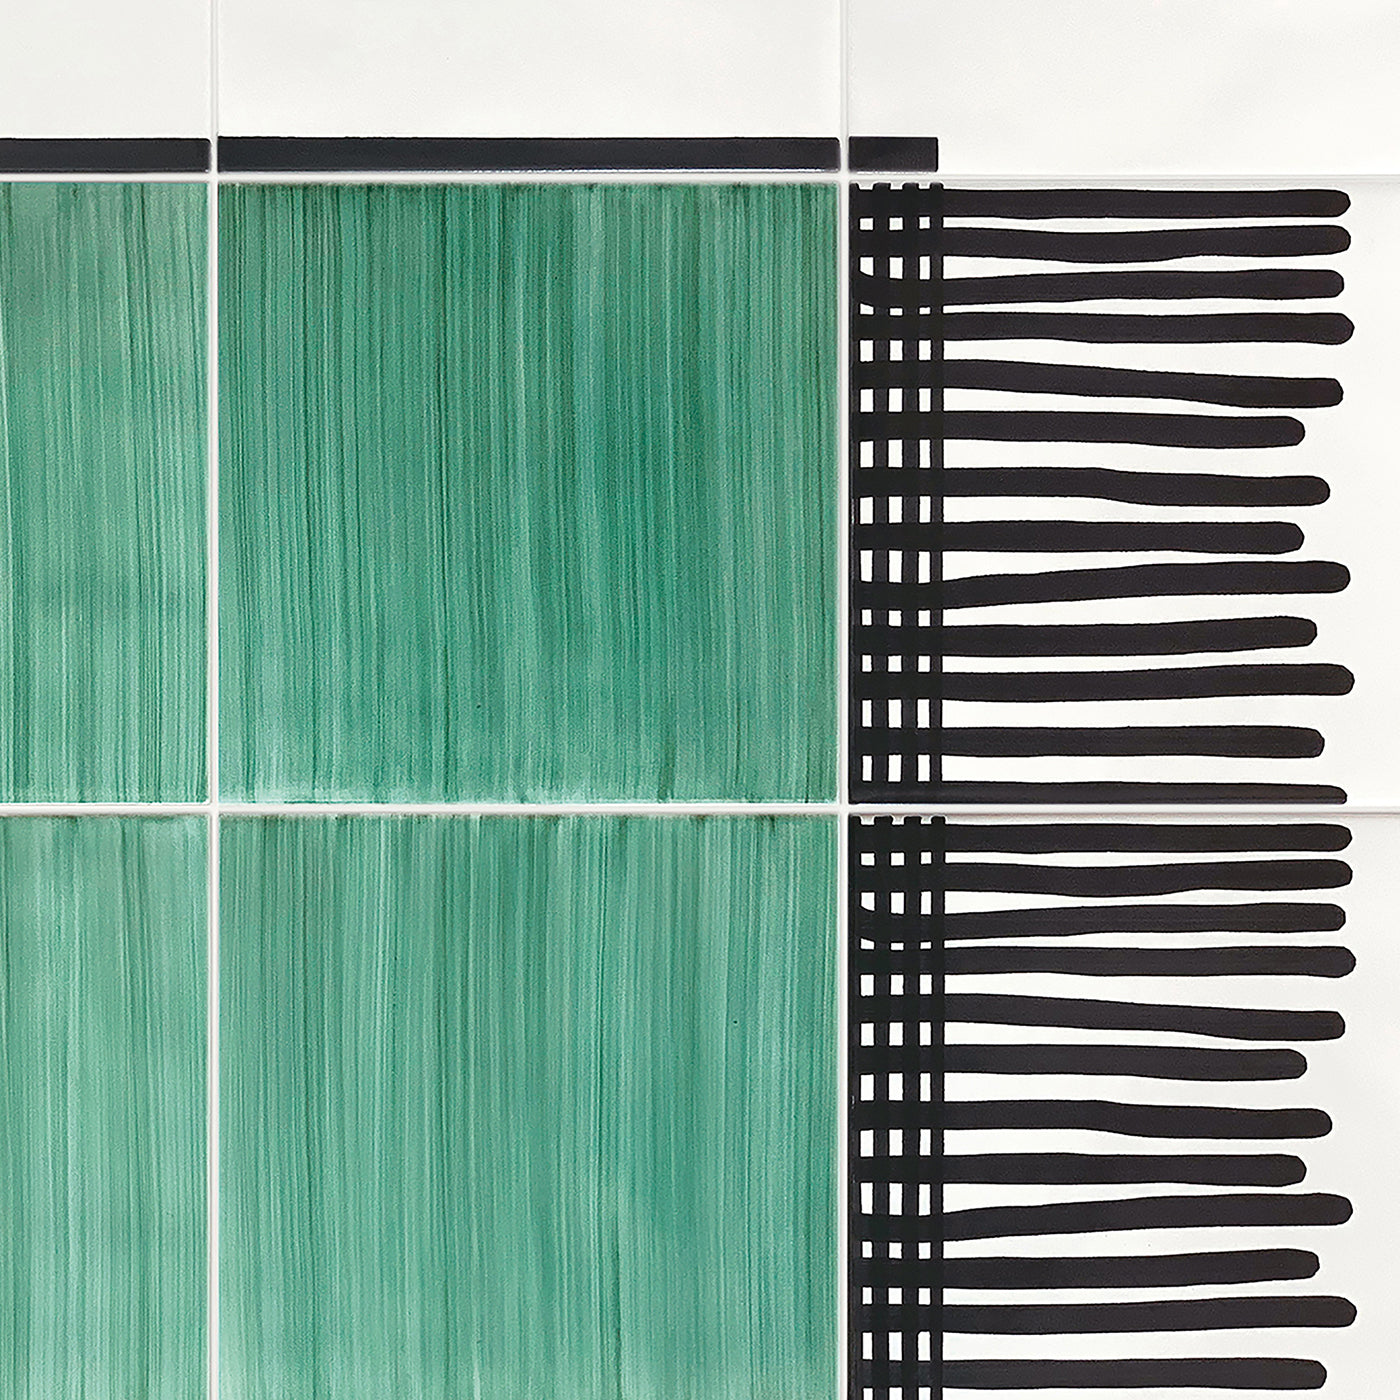 Carpet Total Green Ceramic Composition by Giuliano Andrea dell’Uva 160 x 120 - Alternative view 2